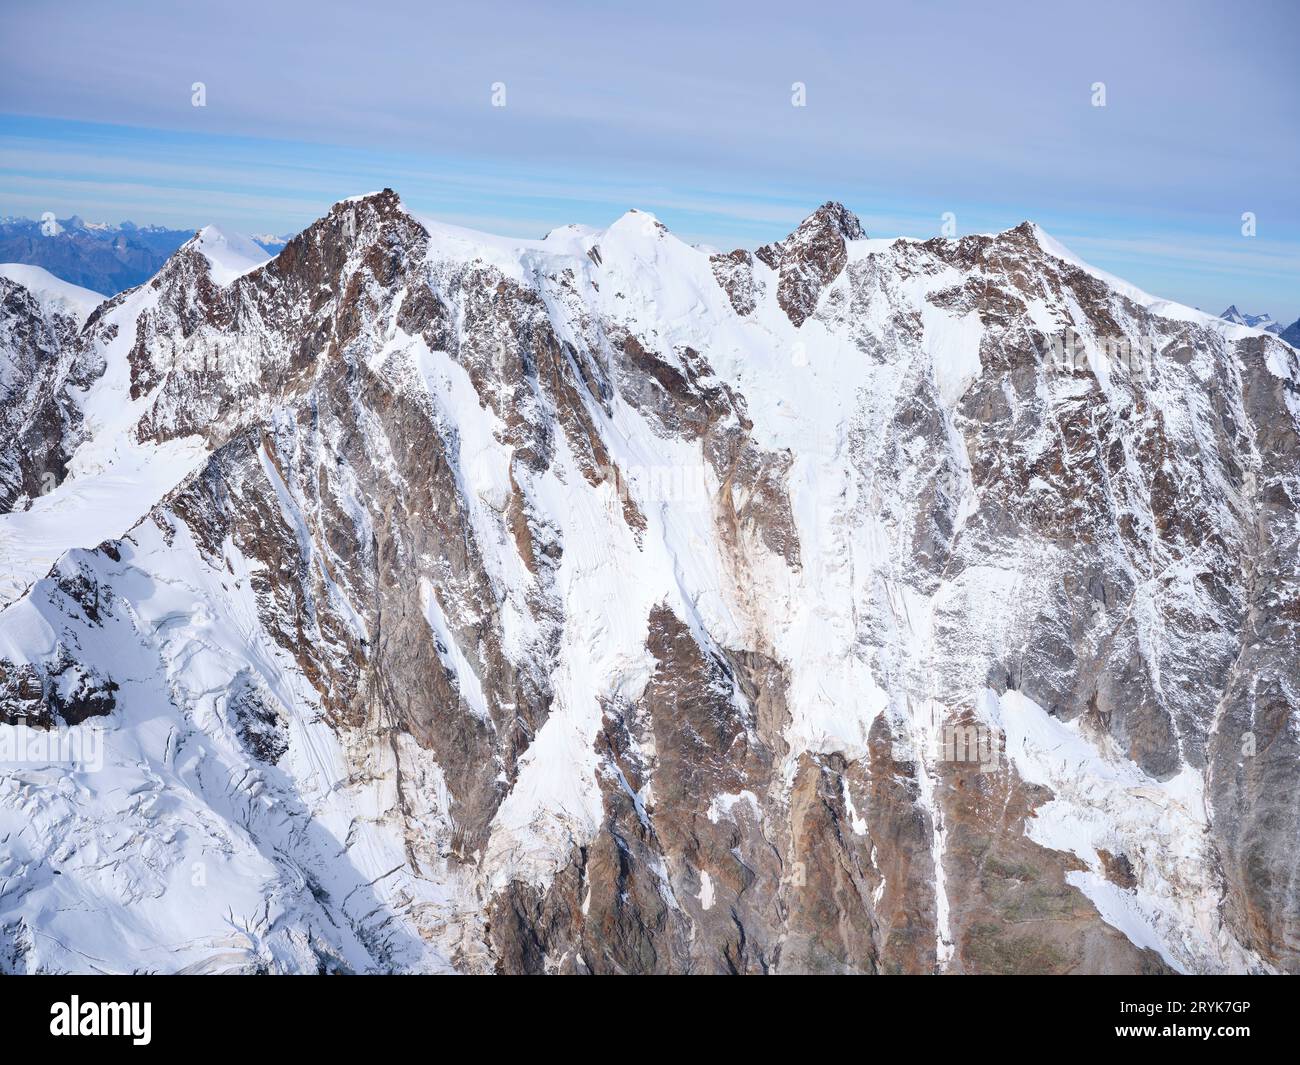 VUE AÉRIENNE. Massif du Monte Rosa (altitude : 4634 mètres) avec son imposante grande muraille orientale. Province de Verbano-Cusio-Ossola, Piémont, Italie. Banque D'Images